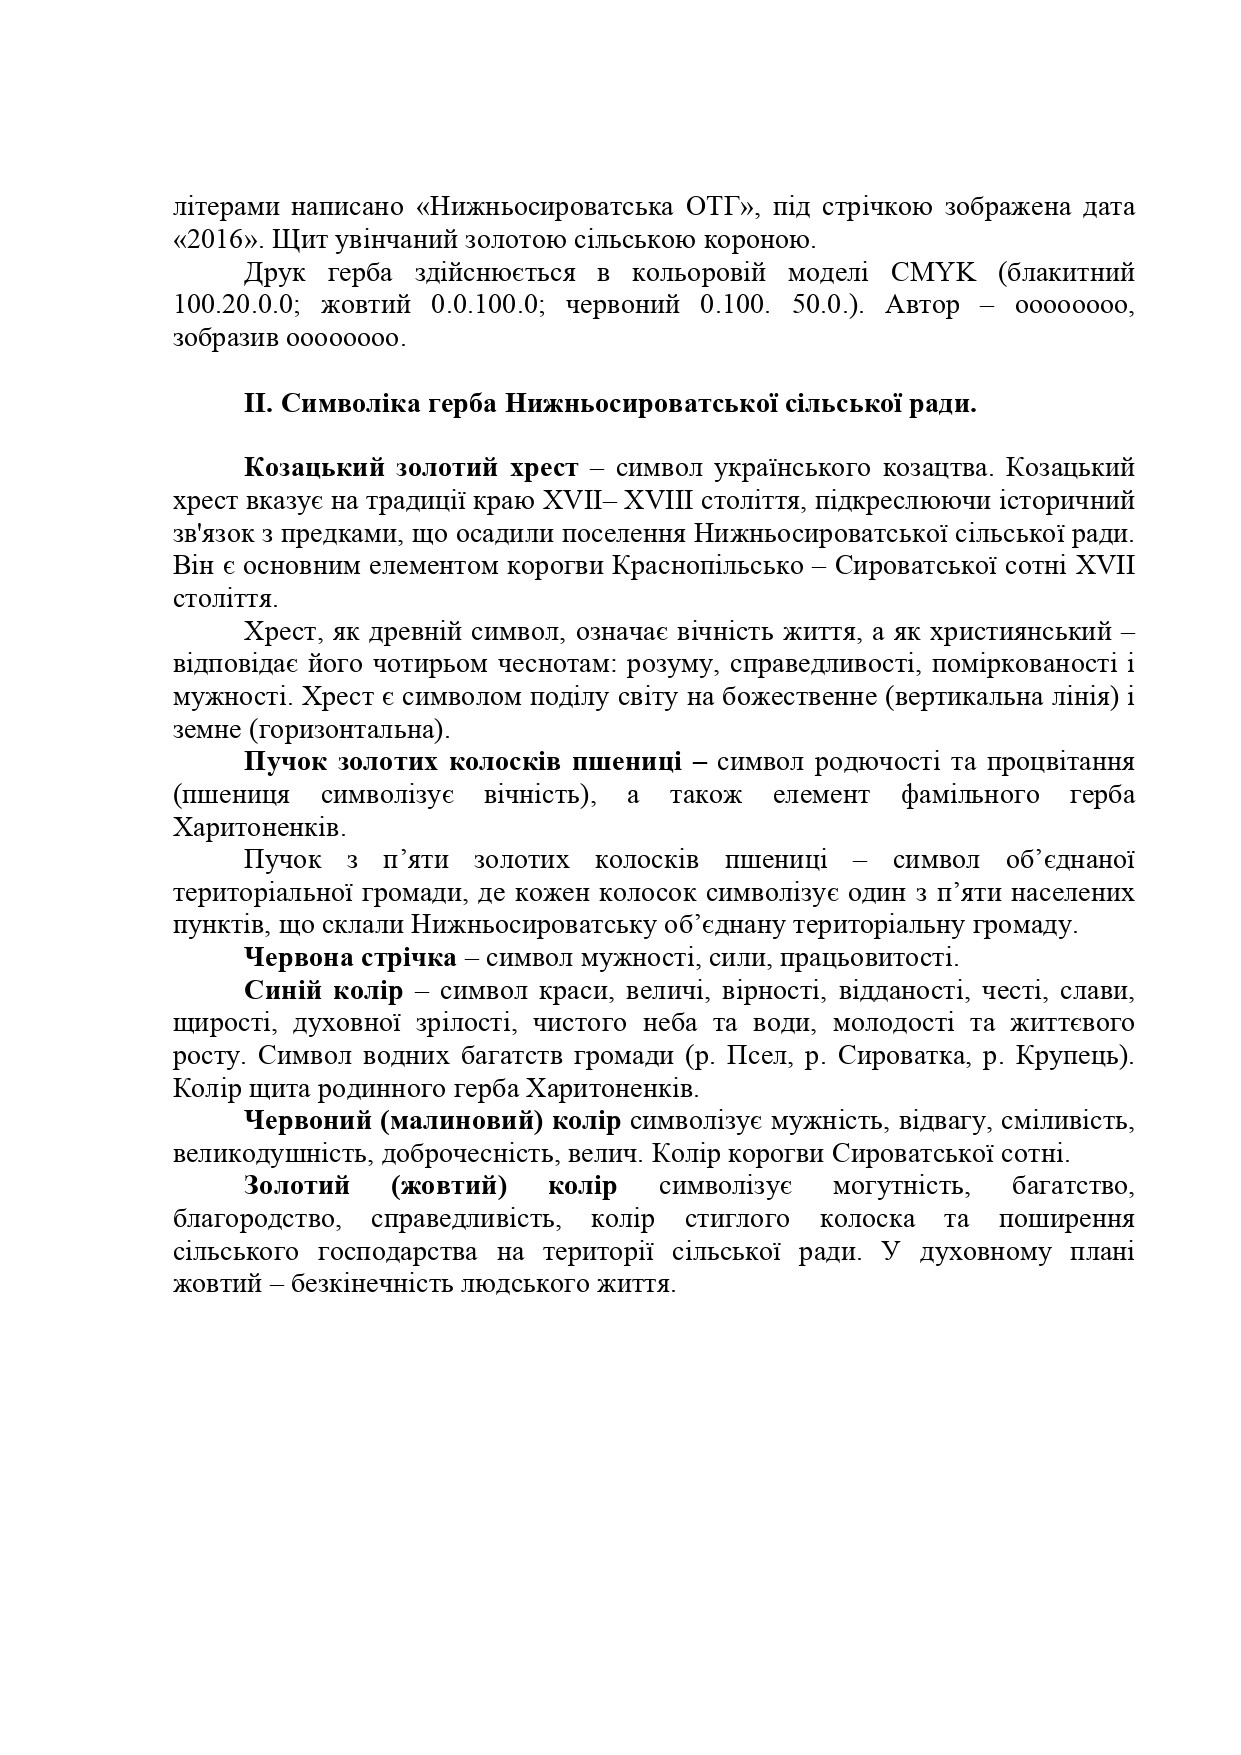 Громадське обговорення ескізів офіційної символіки Нижньосироватської сільської ради